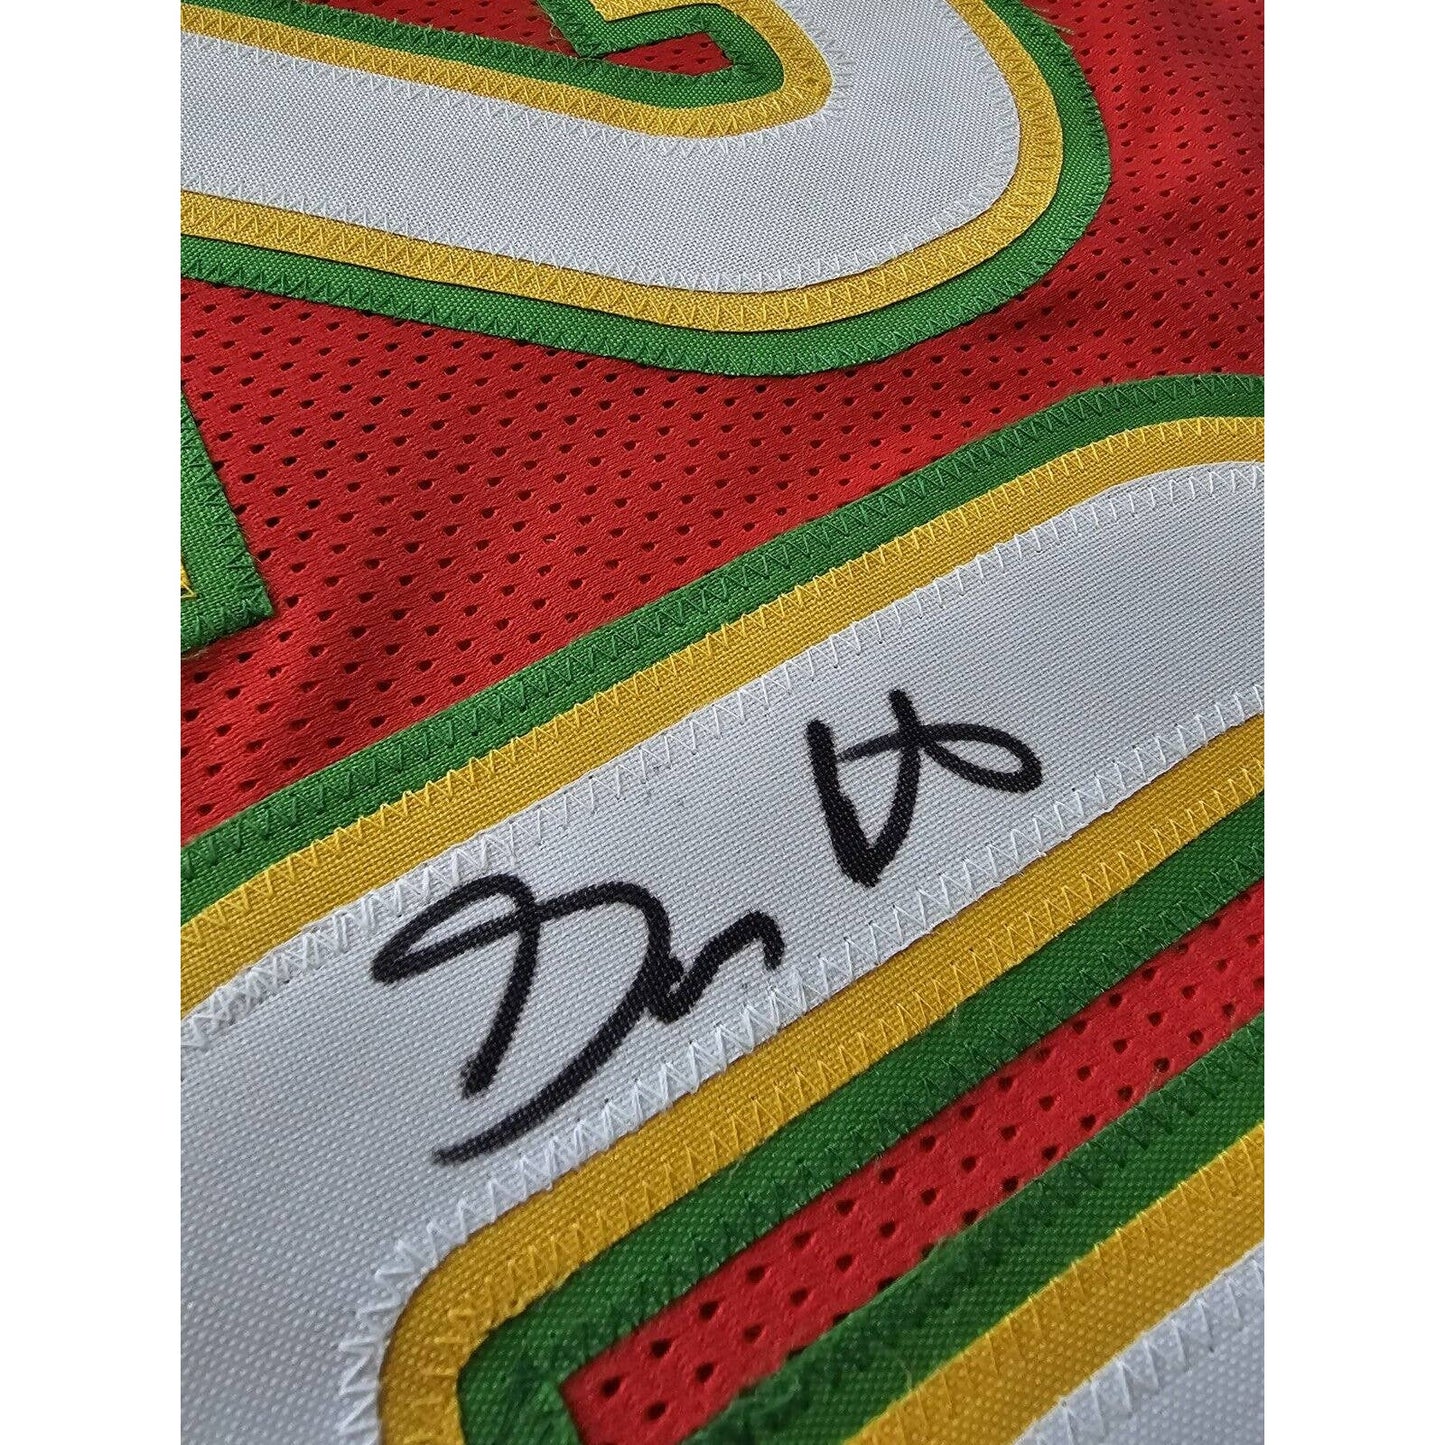 Gary Payton Autographed/Signed Jersey JSA COA Seattle Supersonics